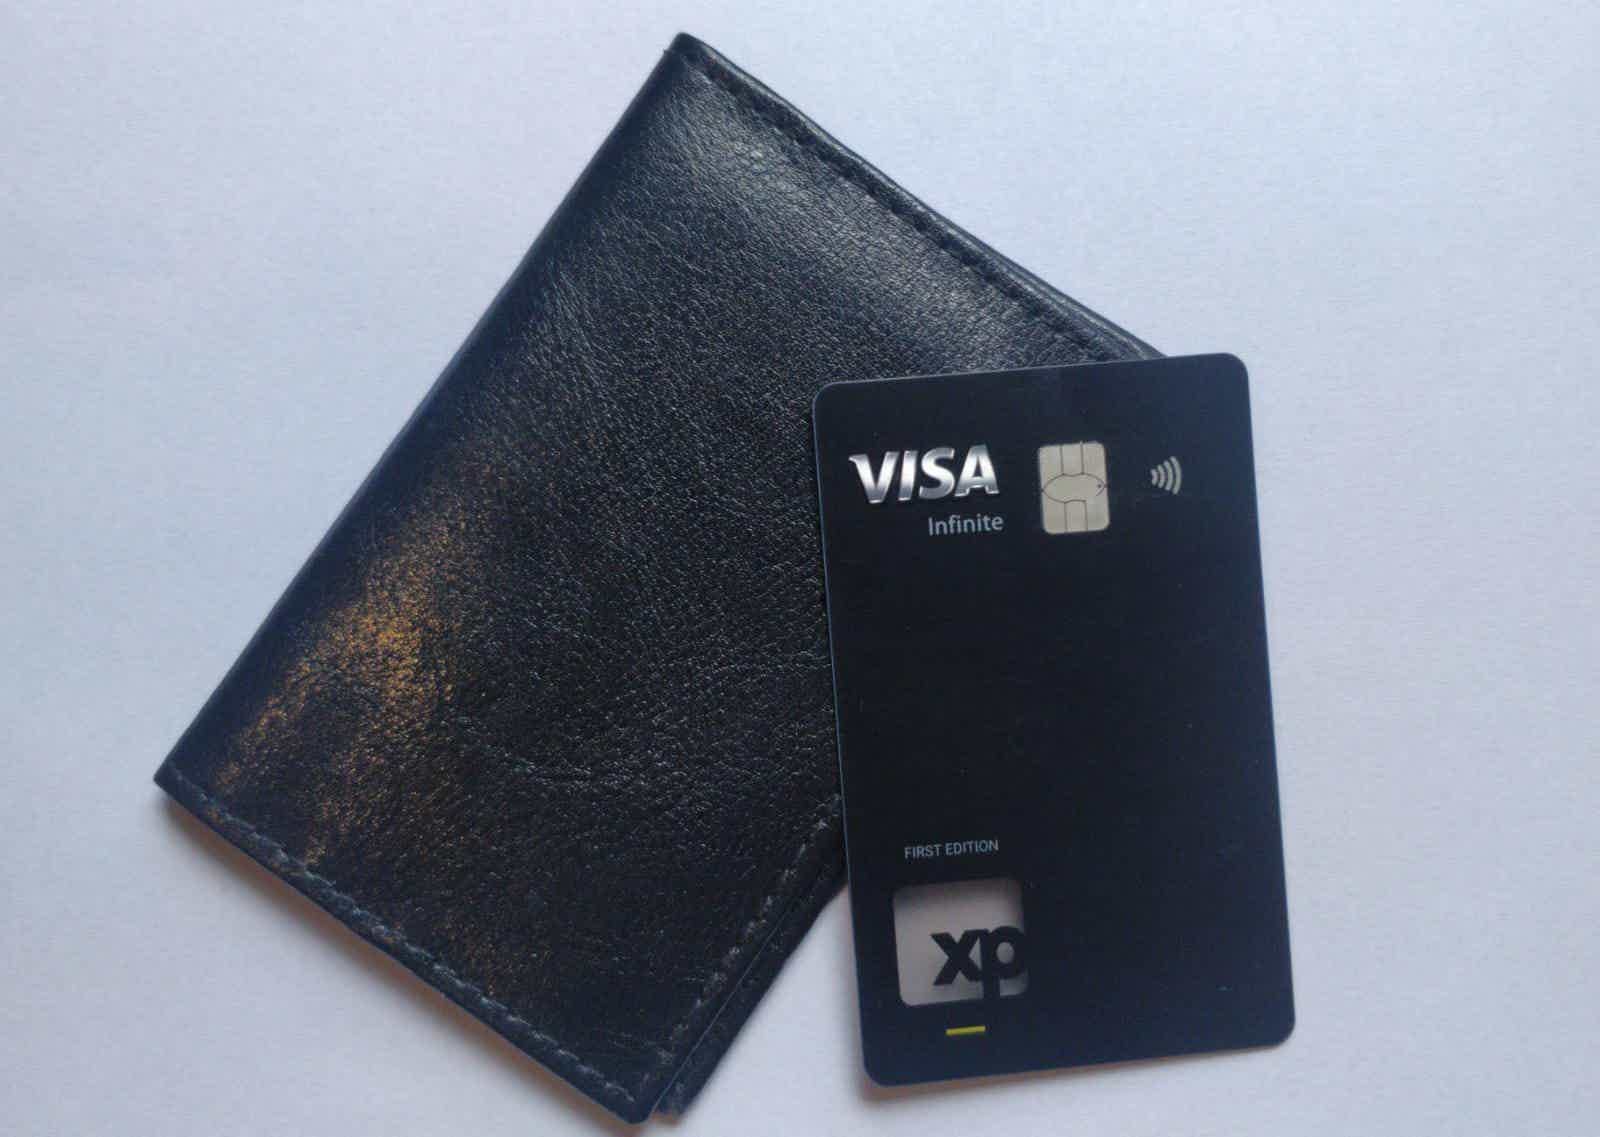 O Cartão de crédito XP vale a pena?